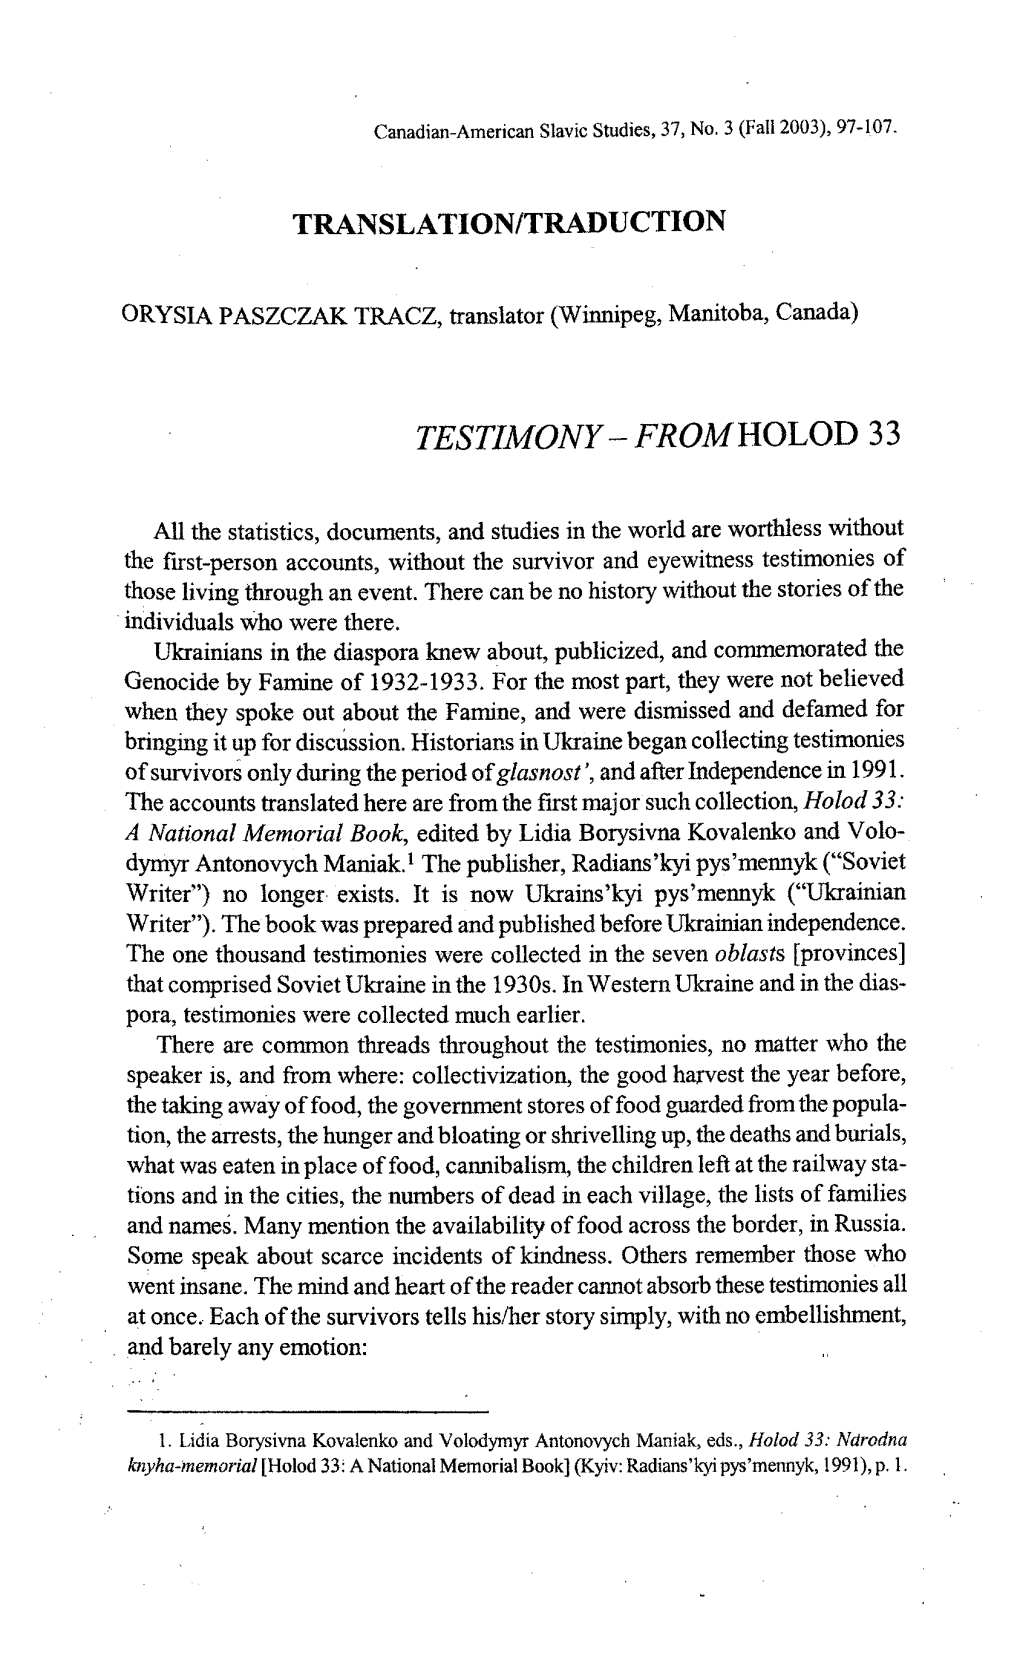 Testimony Â Fromholod 33